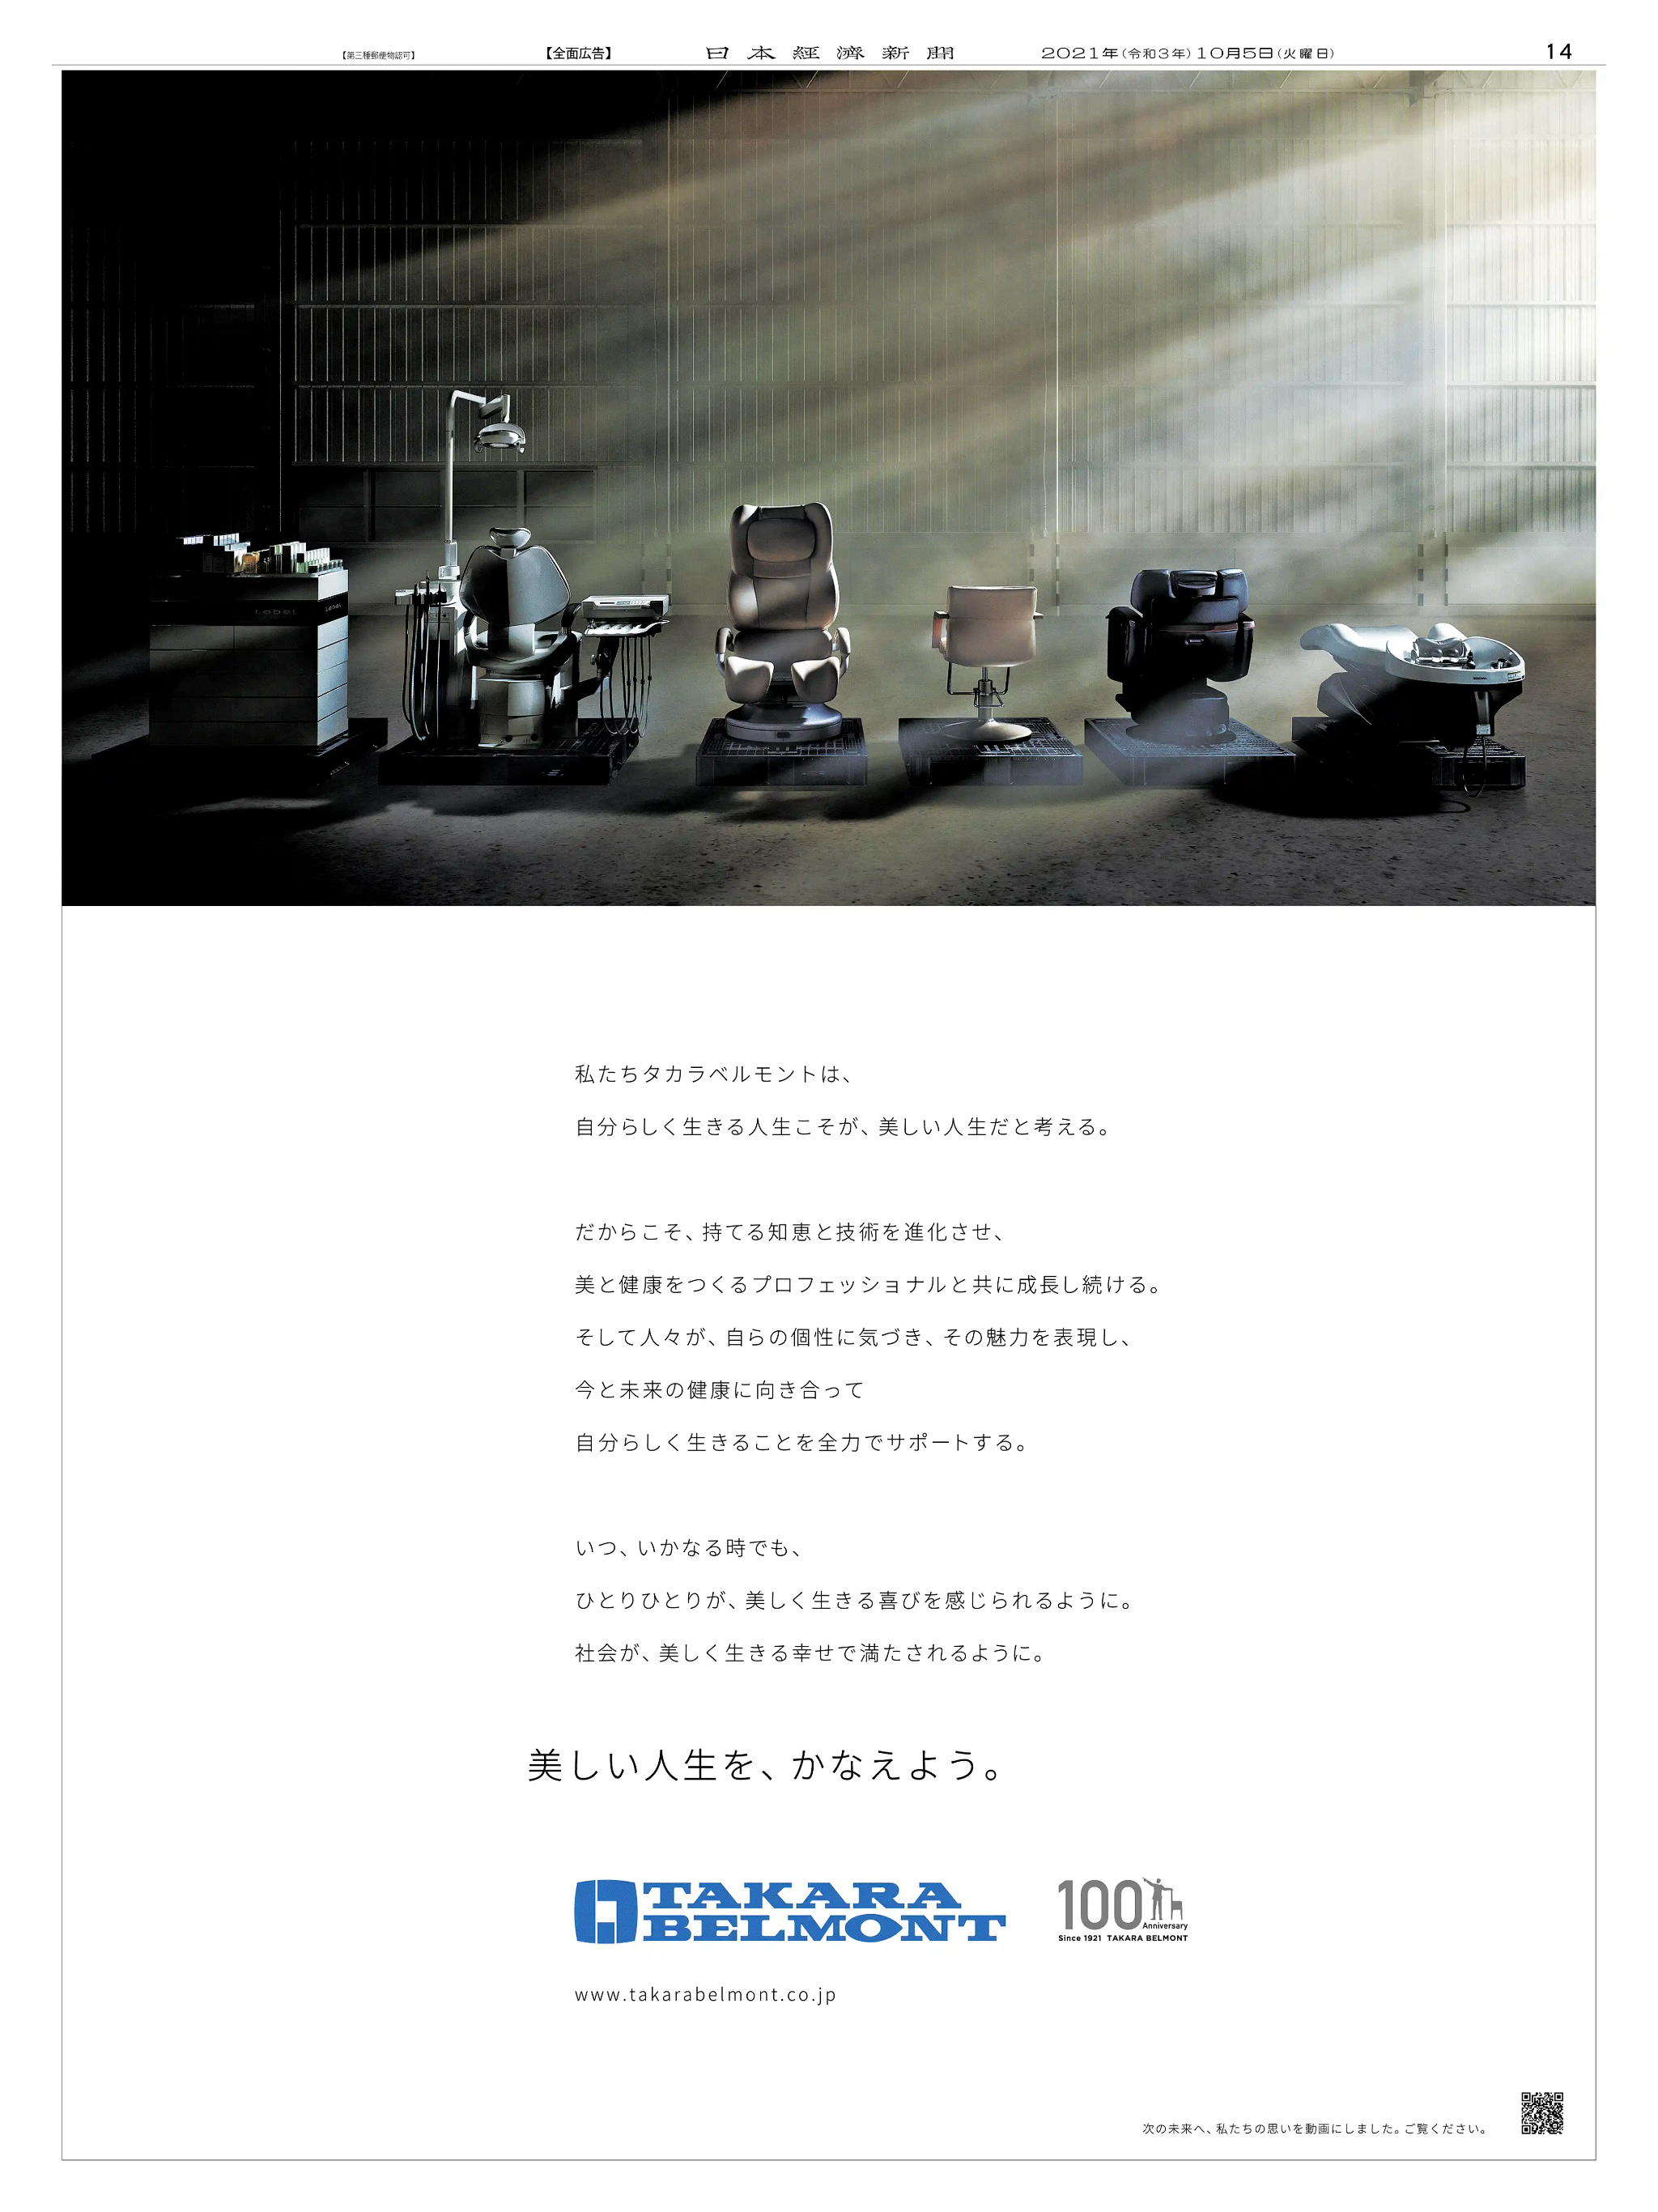 周年記念広告事例 「タカラベルモント 創業100周年」